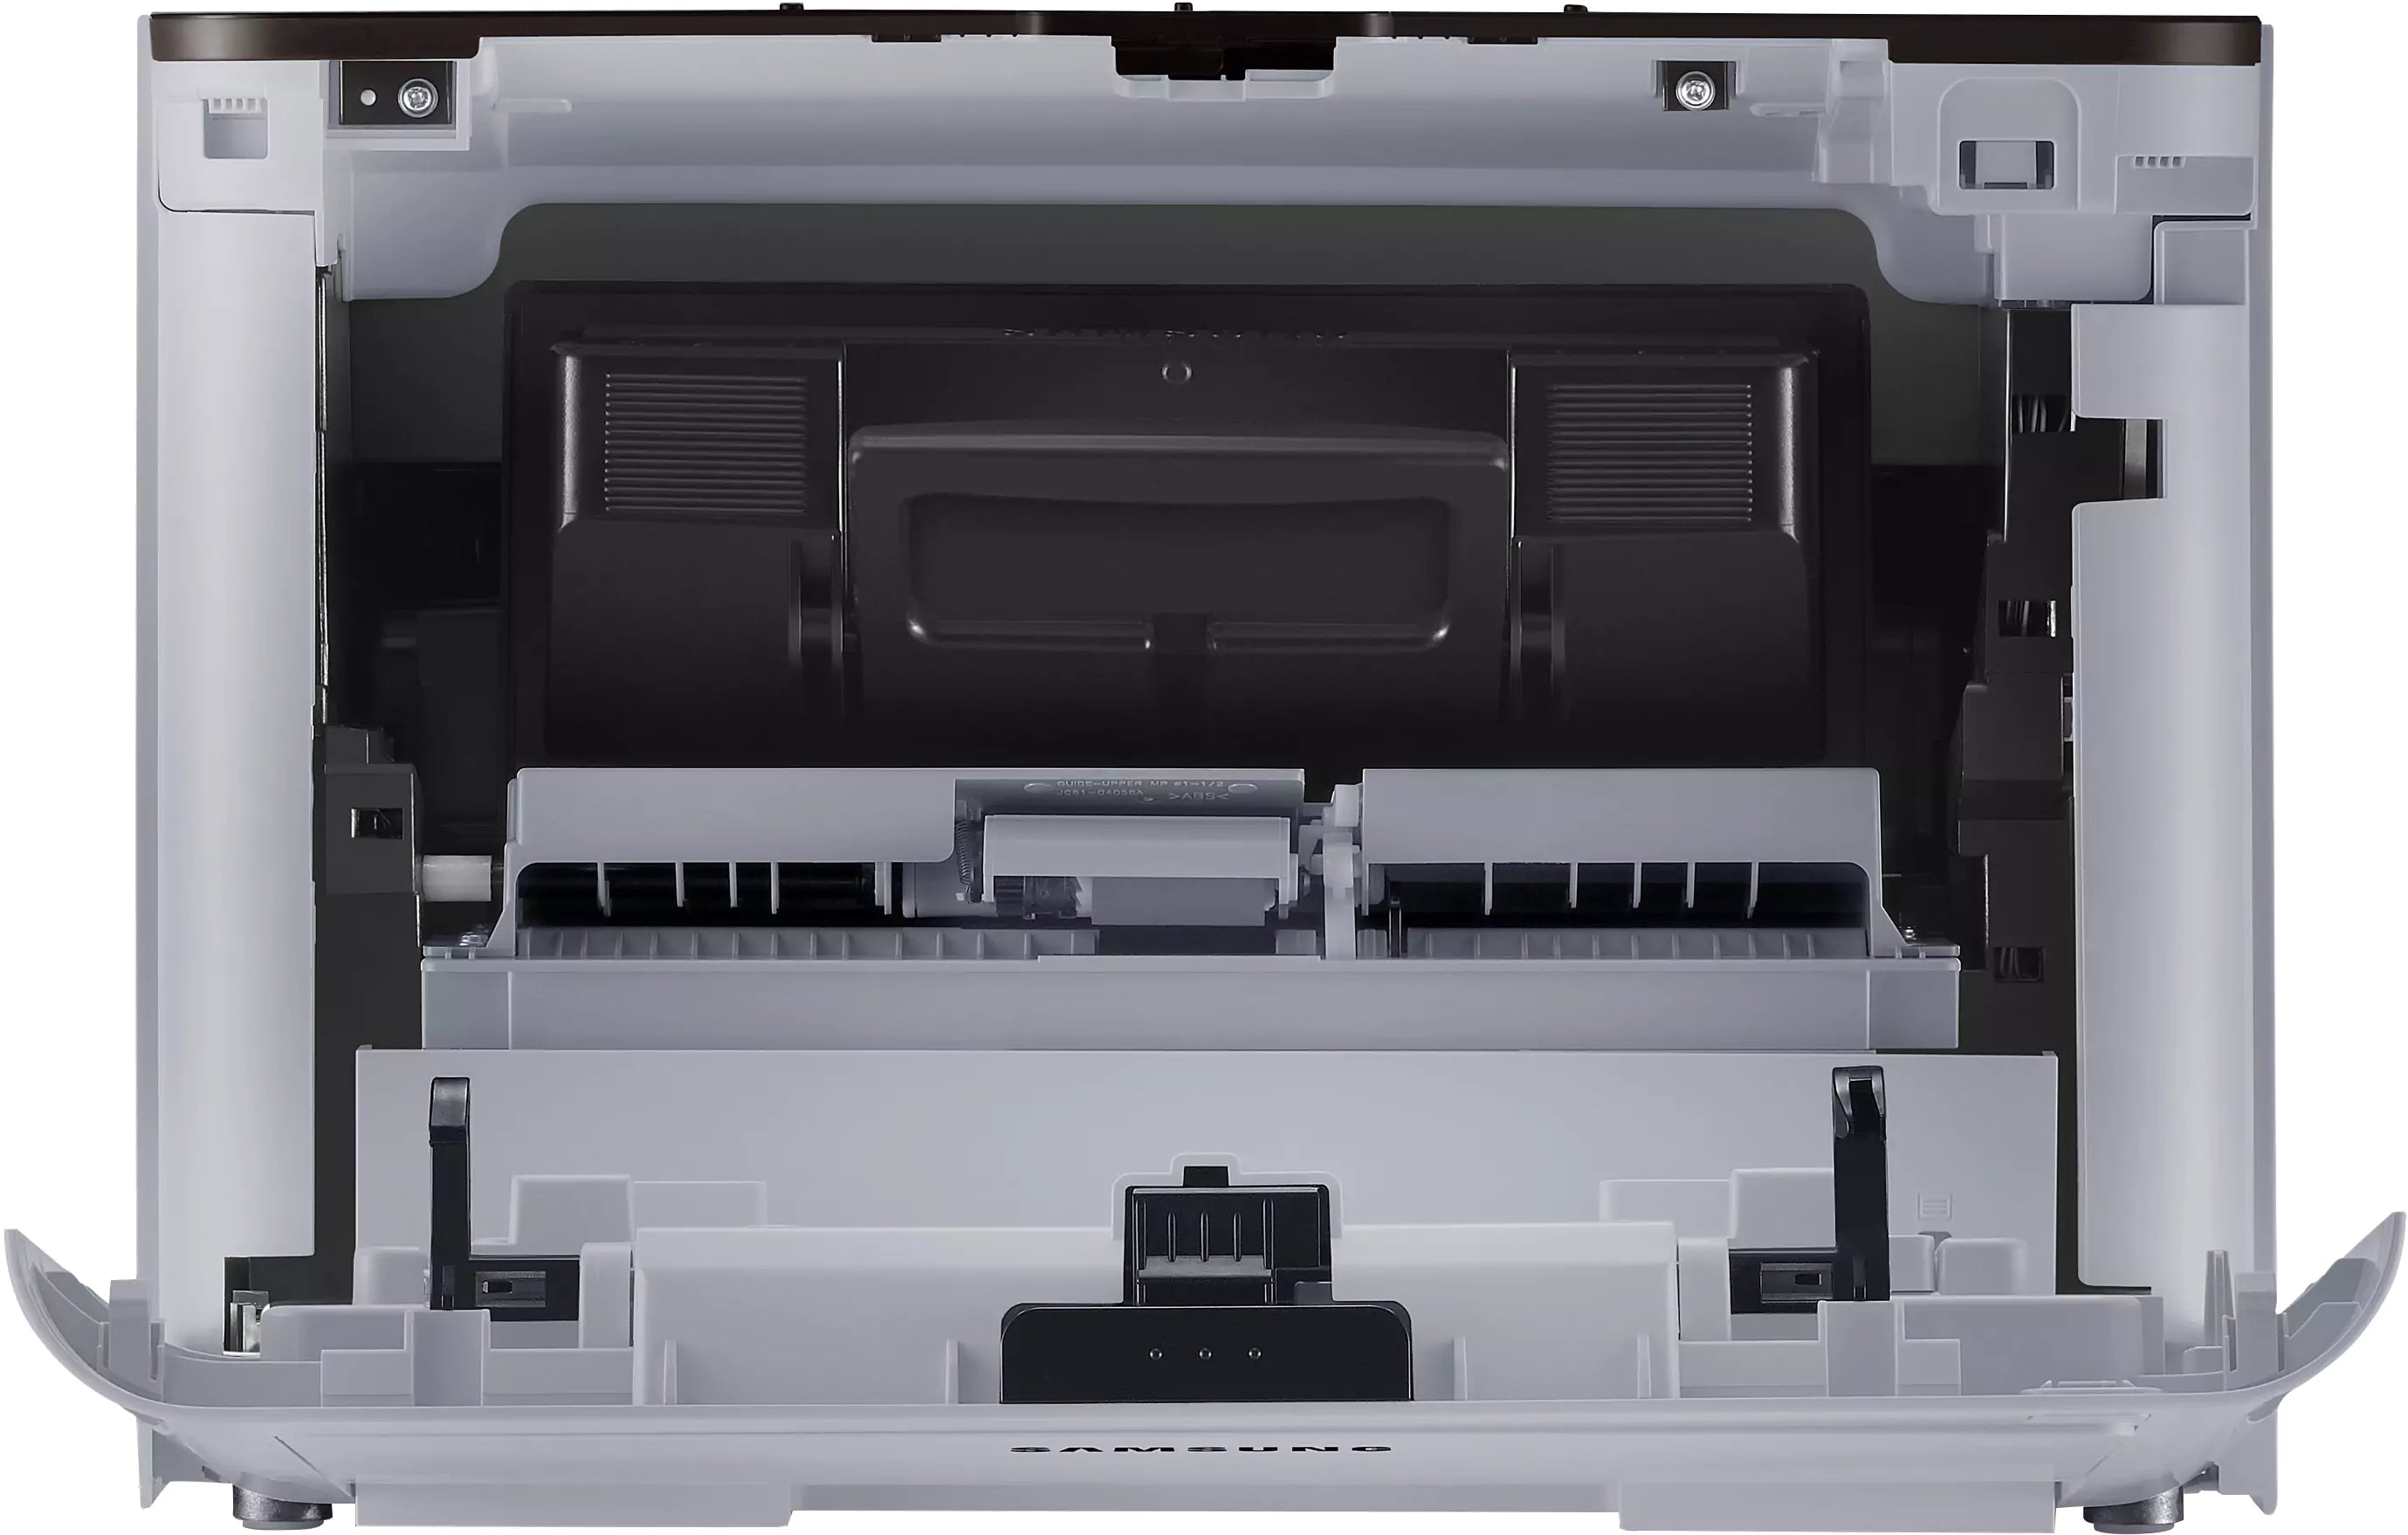 Samsung ProXpress SL-M4020ND Stampante monocromatica B/N A4 1200 DPI 40ppm Duplex Fronte/Retro automatico Rete